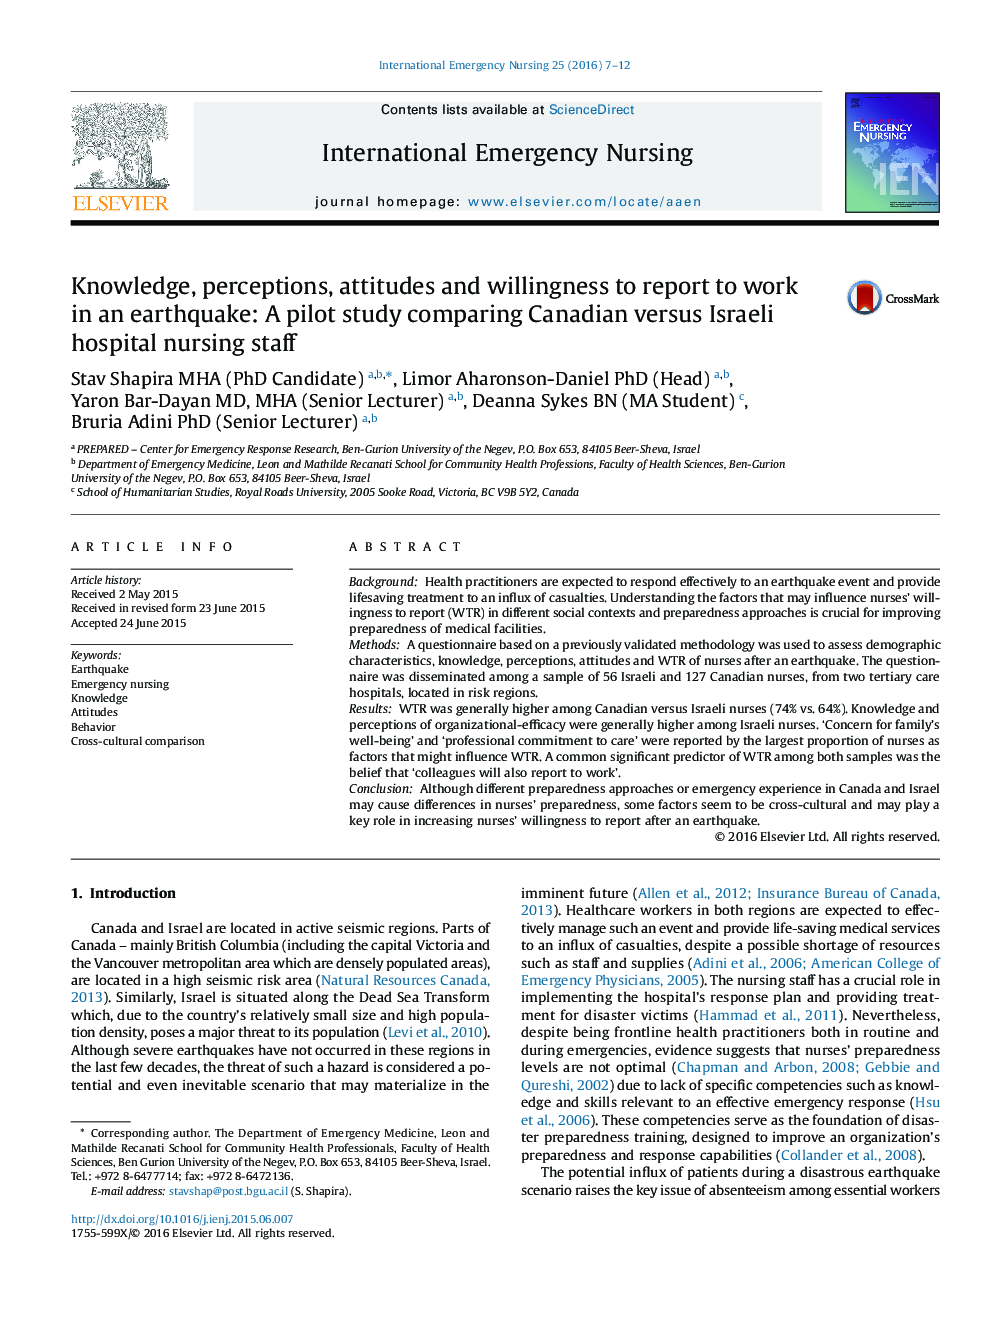 دانش، درک، نگرش و تمایل به گزارش برای کار در یک زلزله: یک مطالعه آزمایشی از مقایسه کارکنان پرستاری بیمارستان کانادا و پرستاران در فلسطین اشغالی